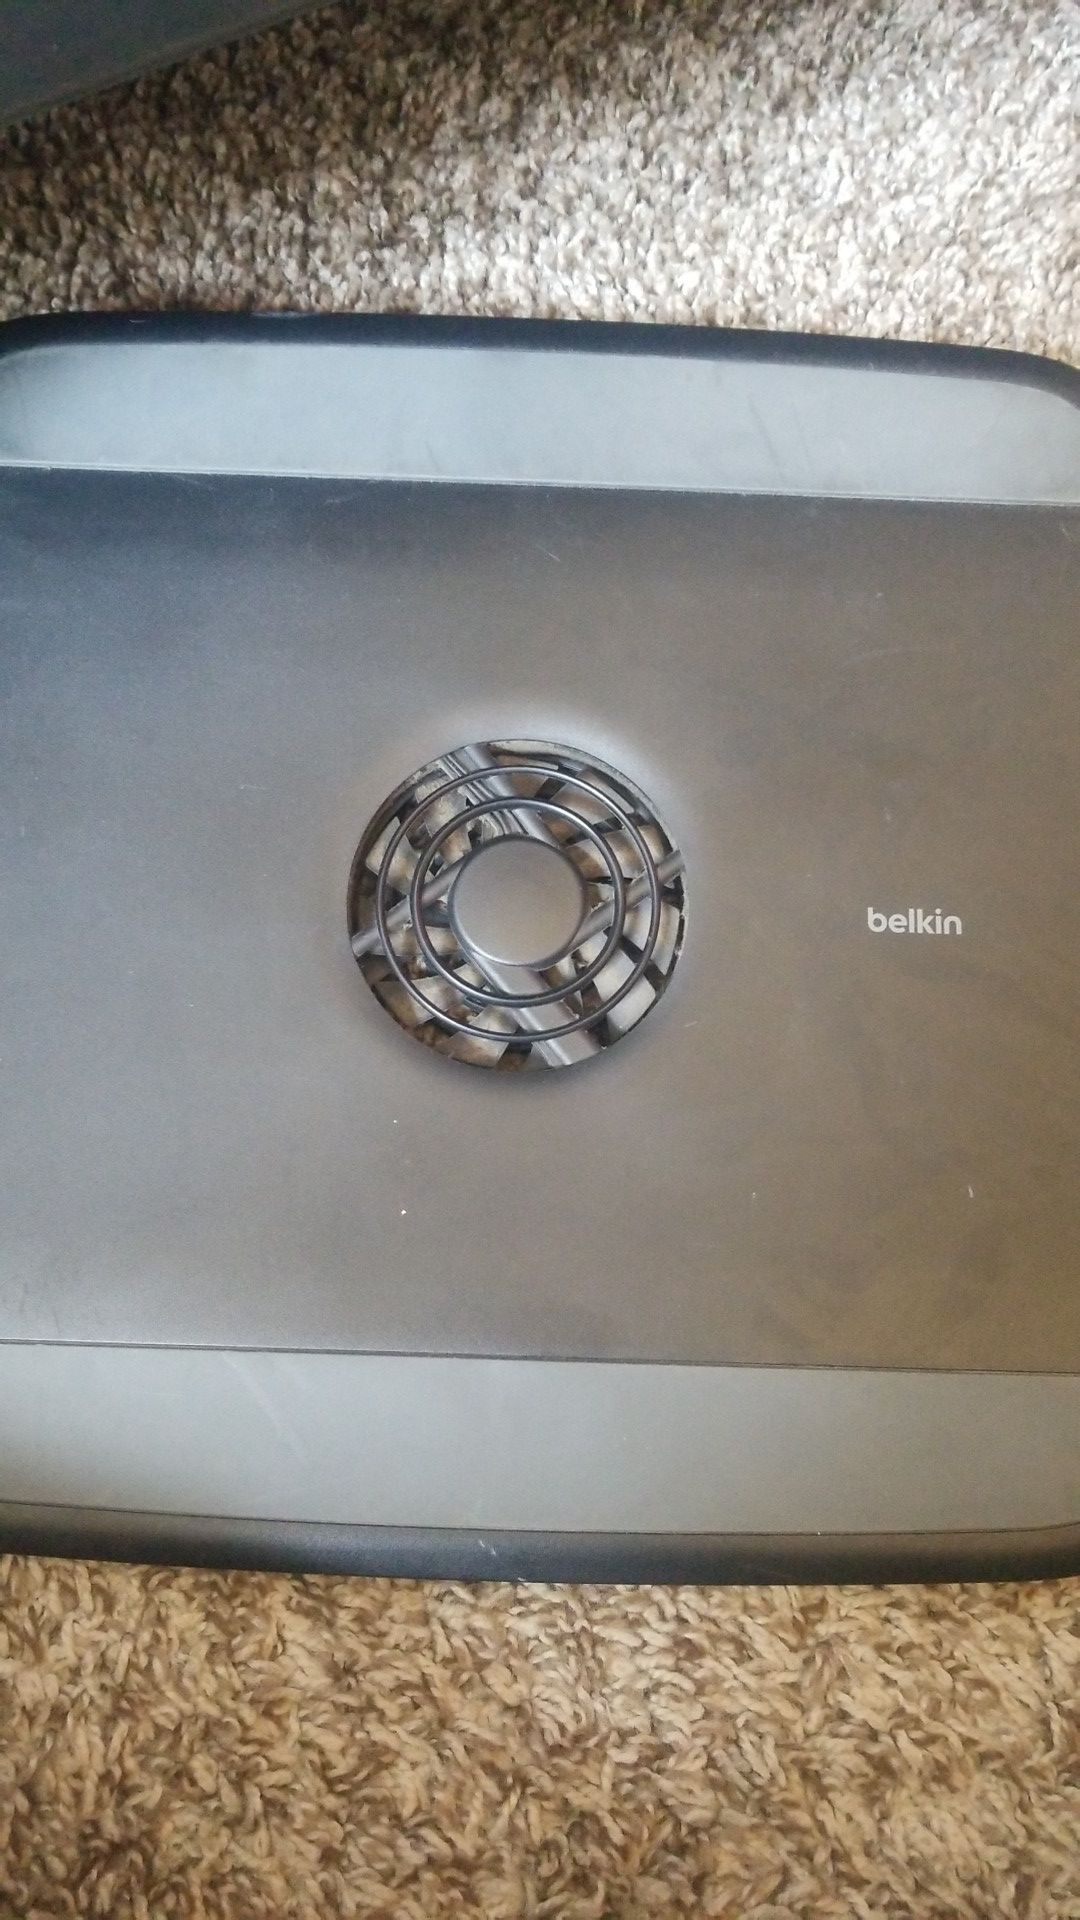 Belkin laptop cooling fan